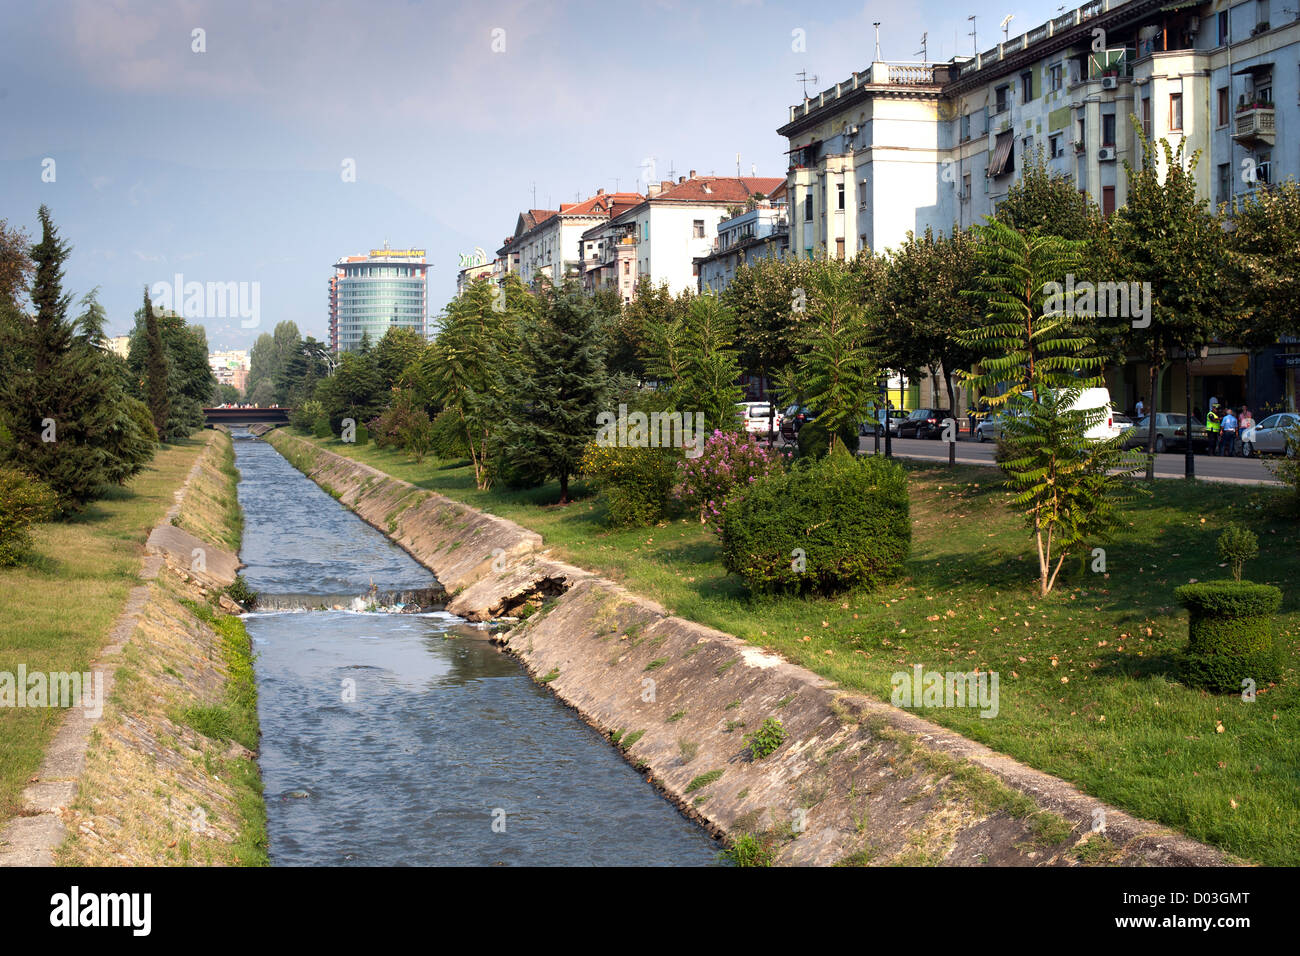 The Lana 'river' in Tirana, the capital of Albania. Stock Photo